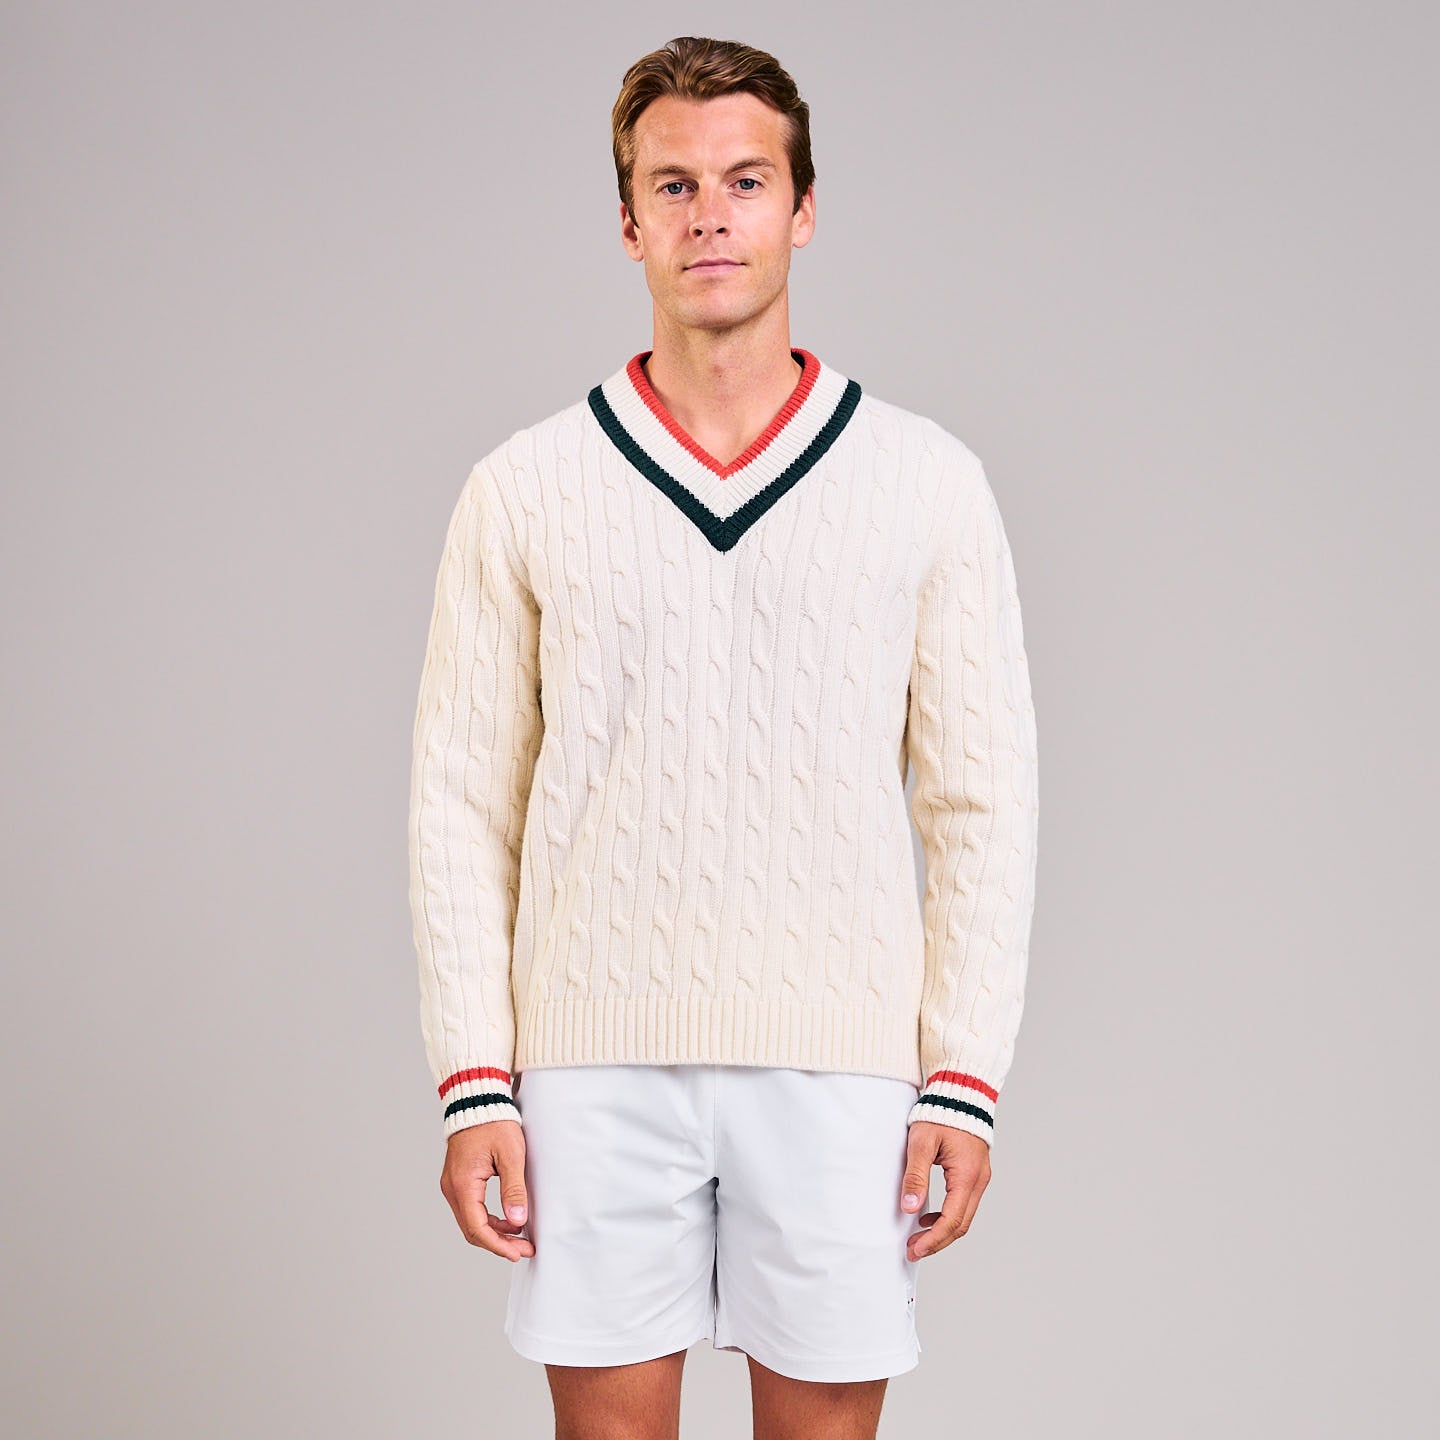 Classic Men's Tennis Sweater